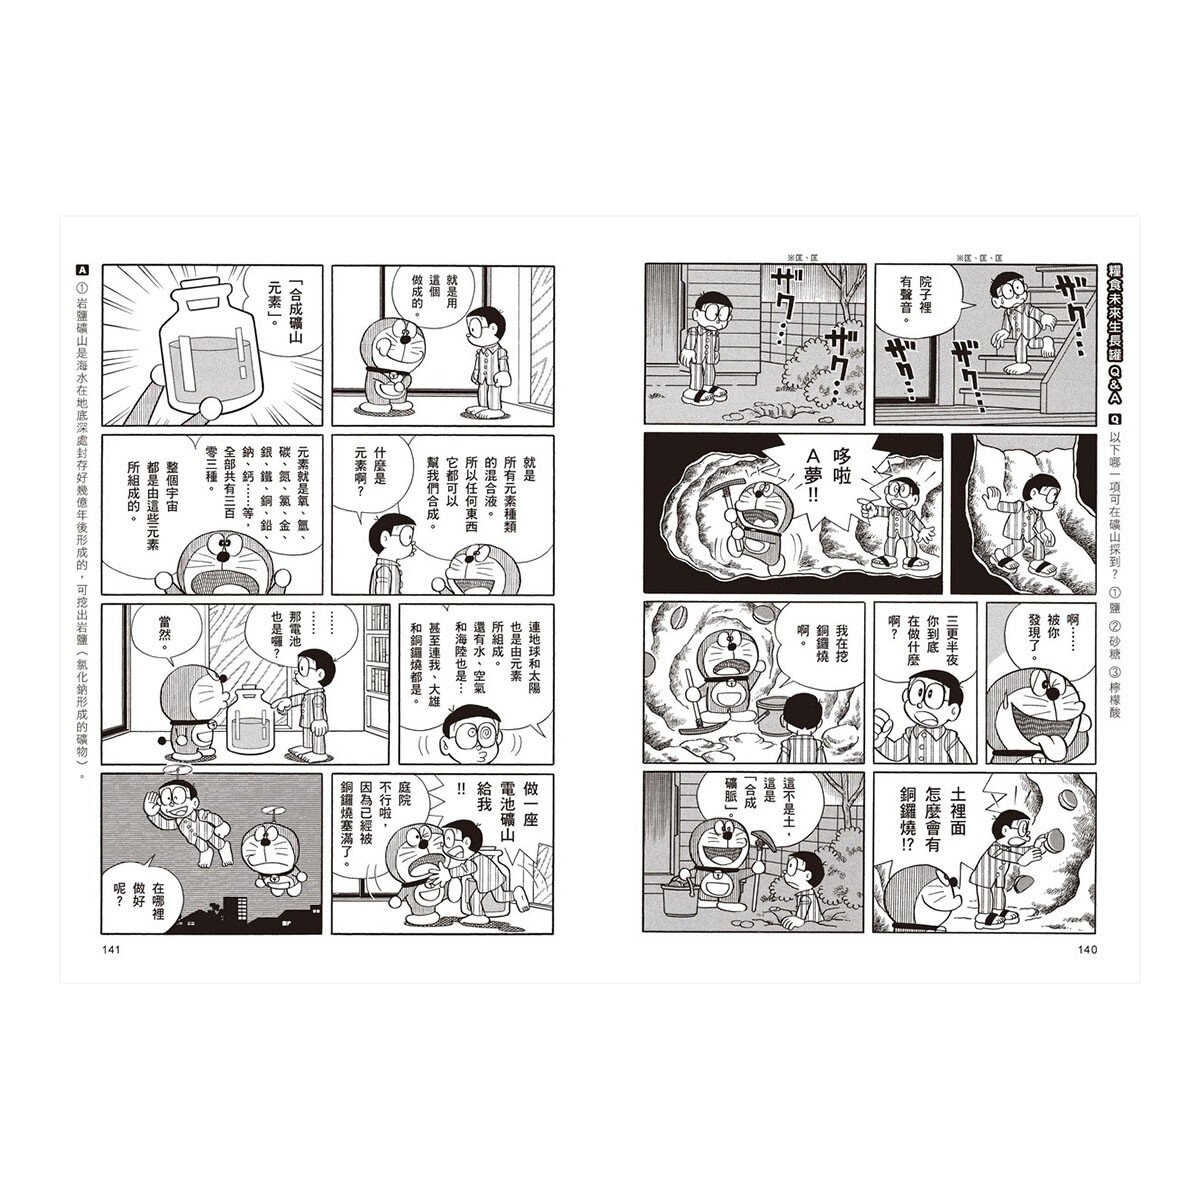 哆啦A夢知識大探索 7-9集 (3書合售)